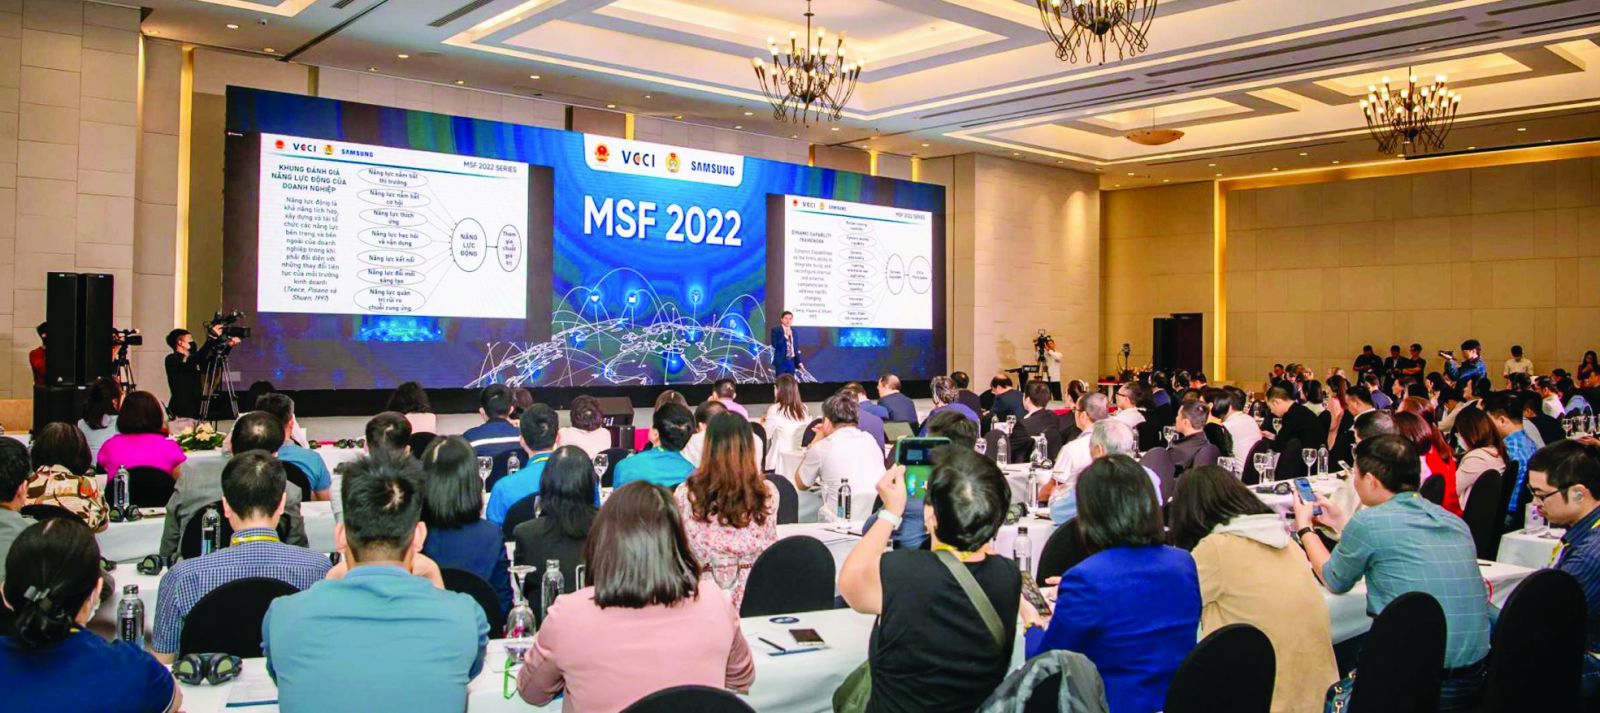  Diễn đàn đa phương (MSF) 2022 với chủ đề 